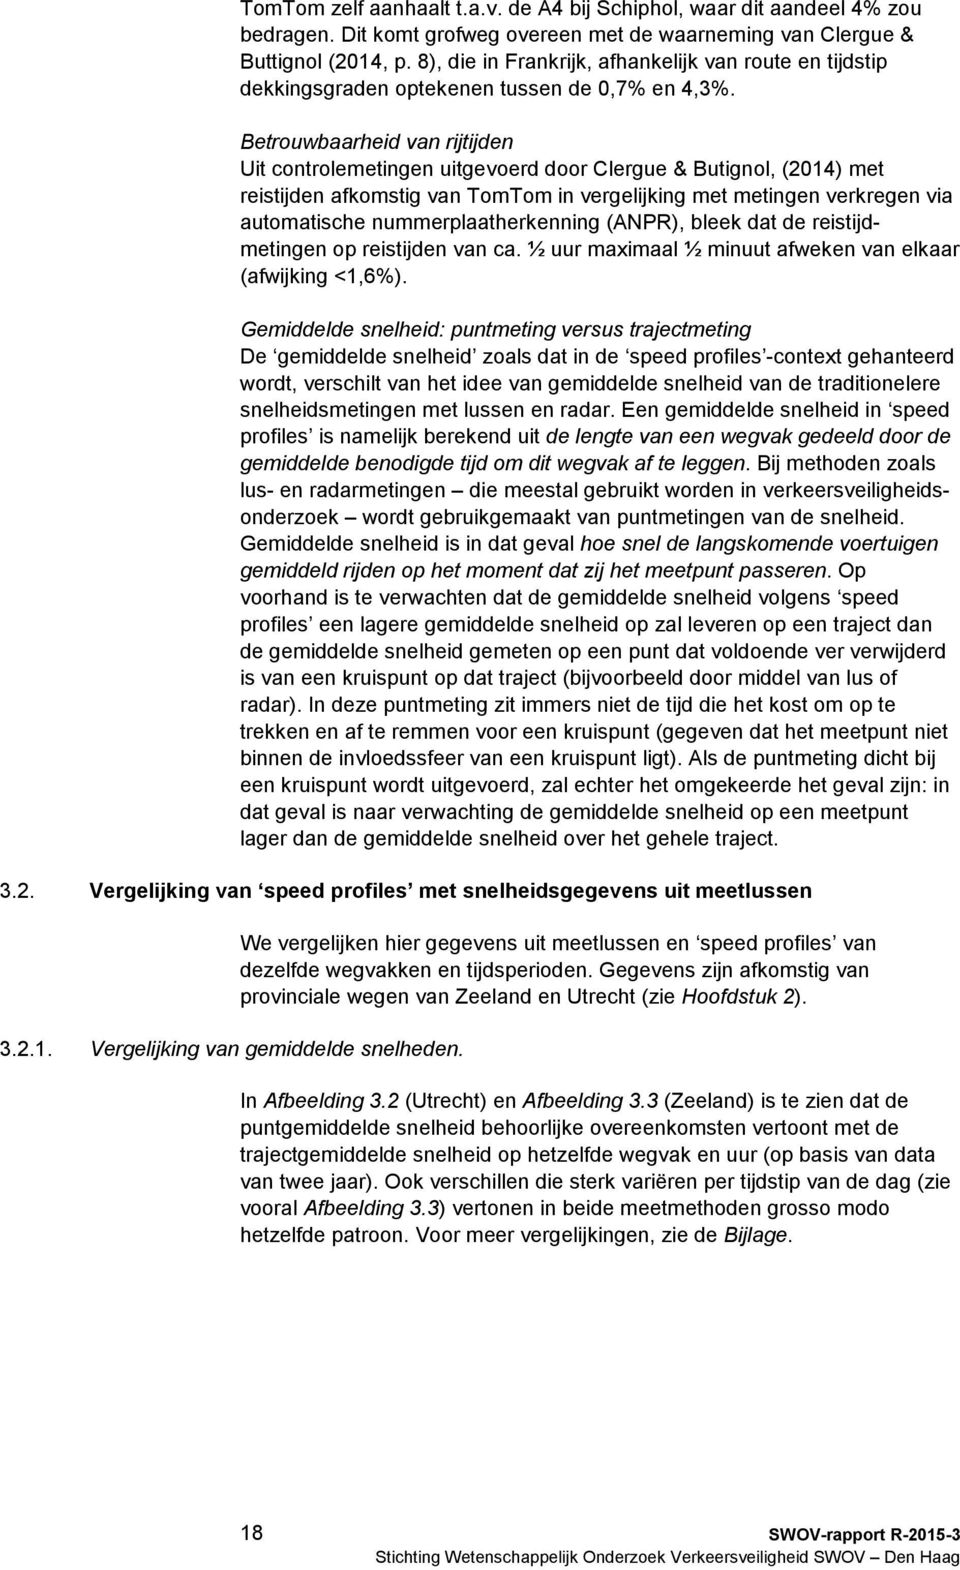 Betrouwbaarheid van rijtijden Uit controlemetingen uitgevoerd door Clergue & Butignol, (2014) met reistijden afkomstig van TomTom in vergelijking met metingen verkregen via automatische